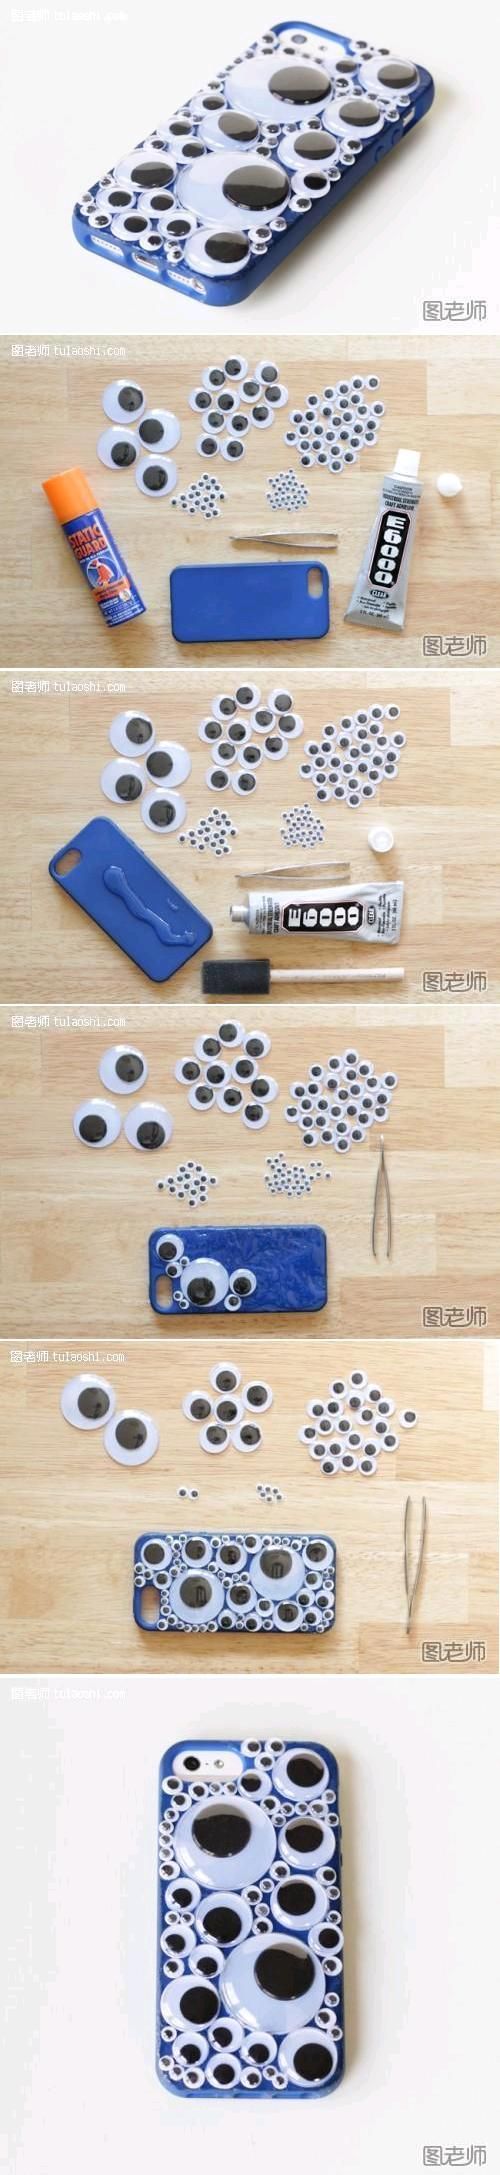 DIY Bubble Phone Case